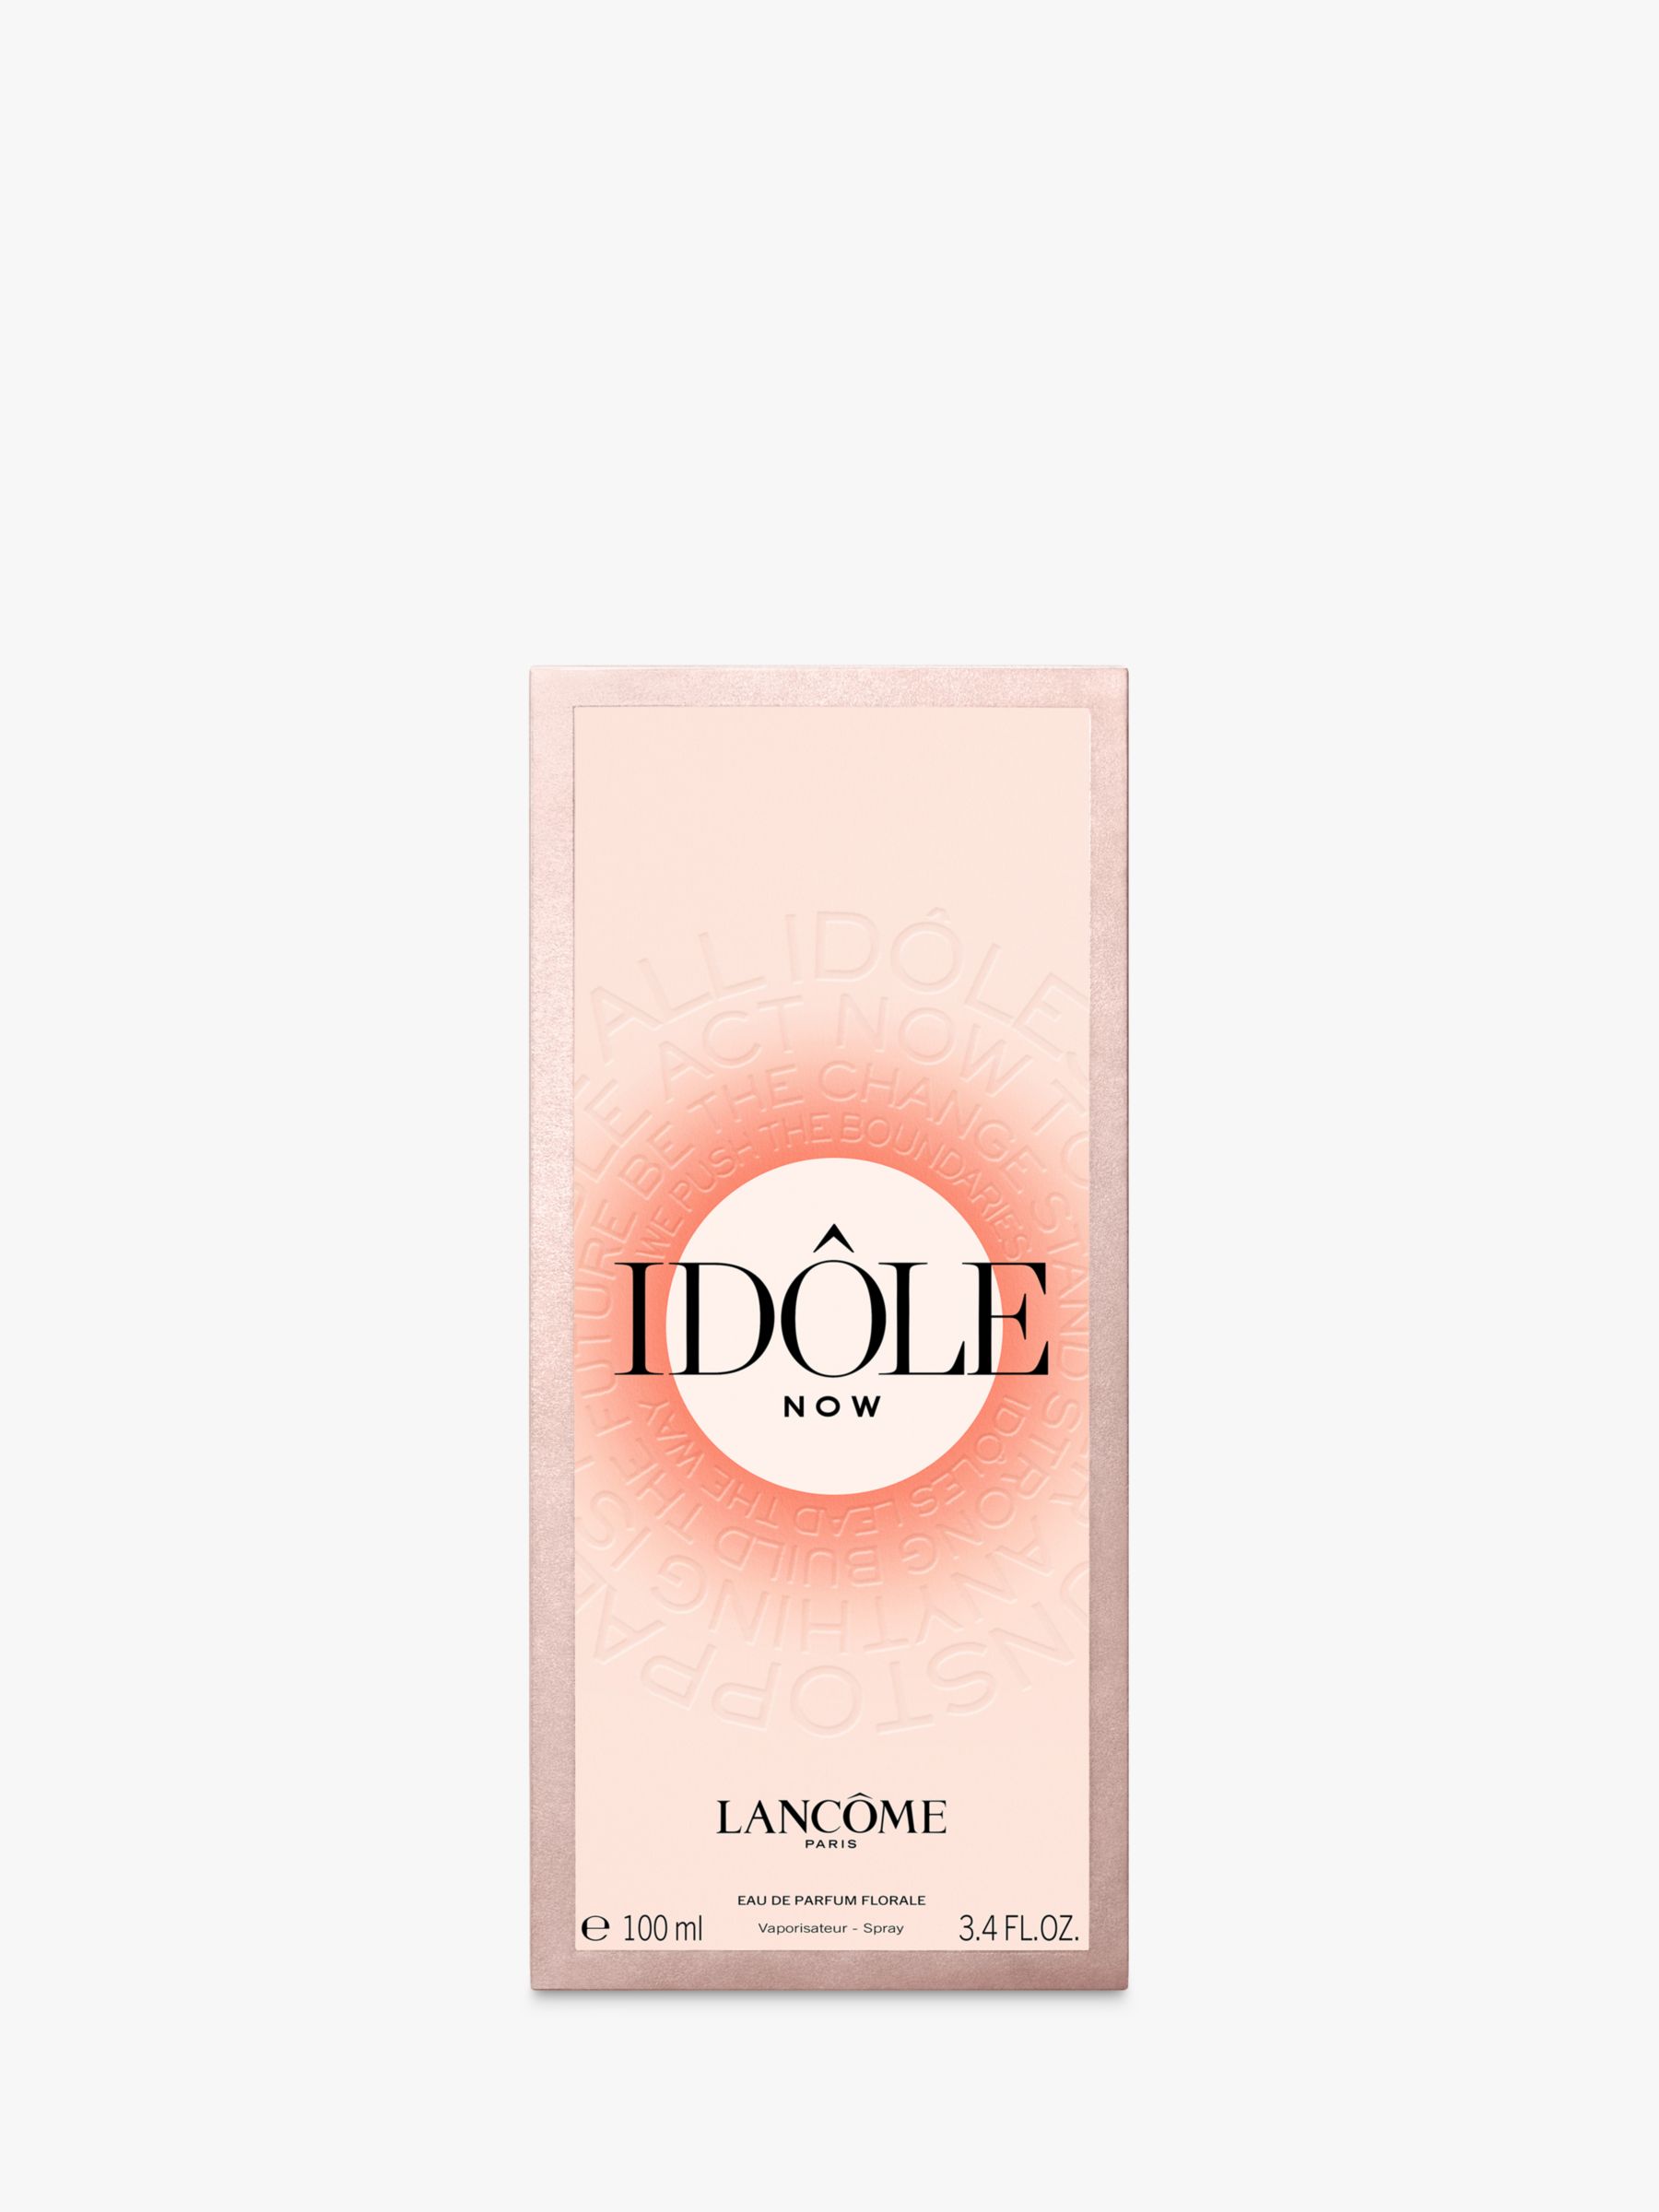 Lancôme Idôle Now Eau de Parfum, 100ml 6